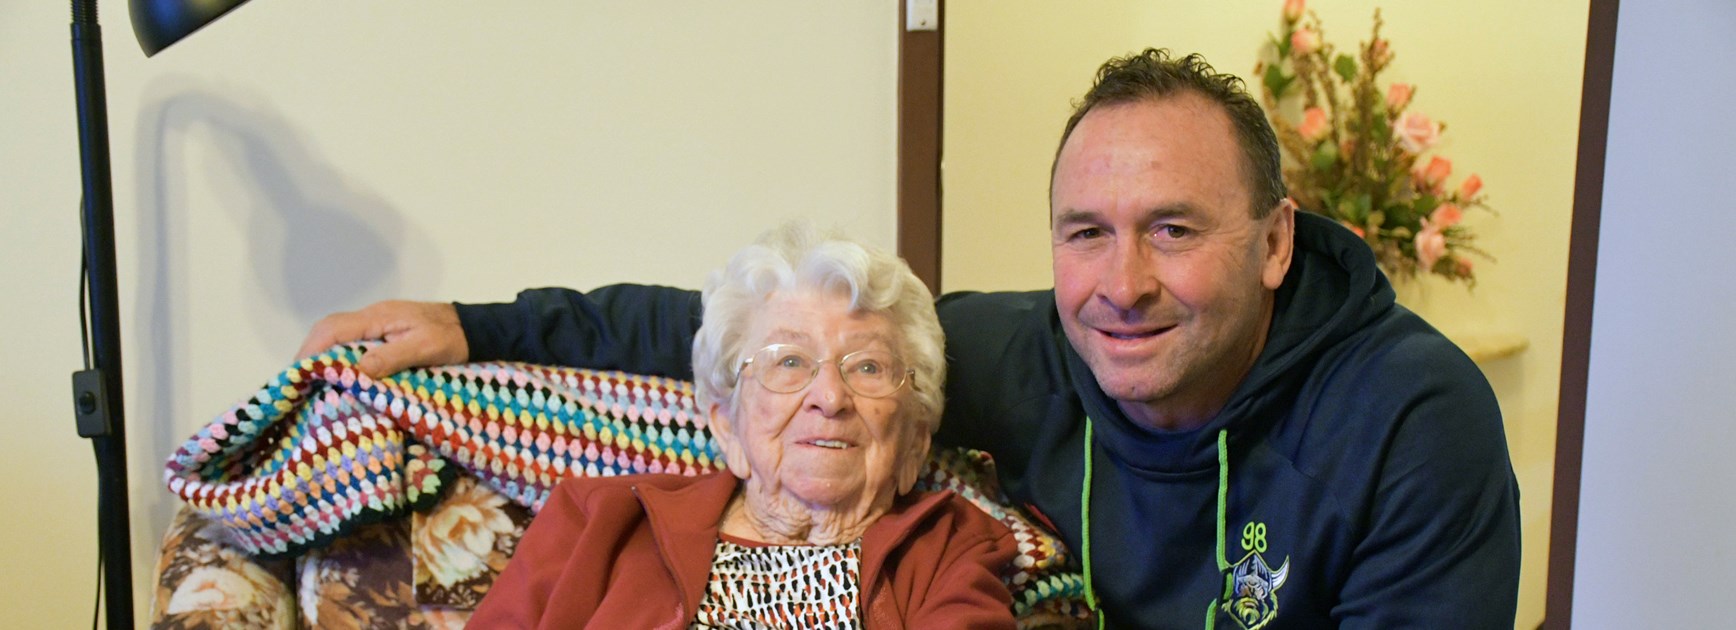 98-year-old Myrtle meets Raider 98